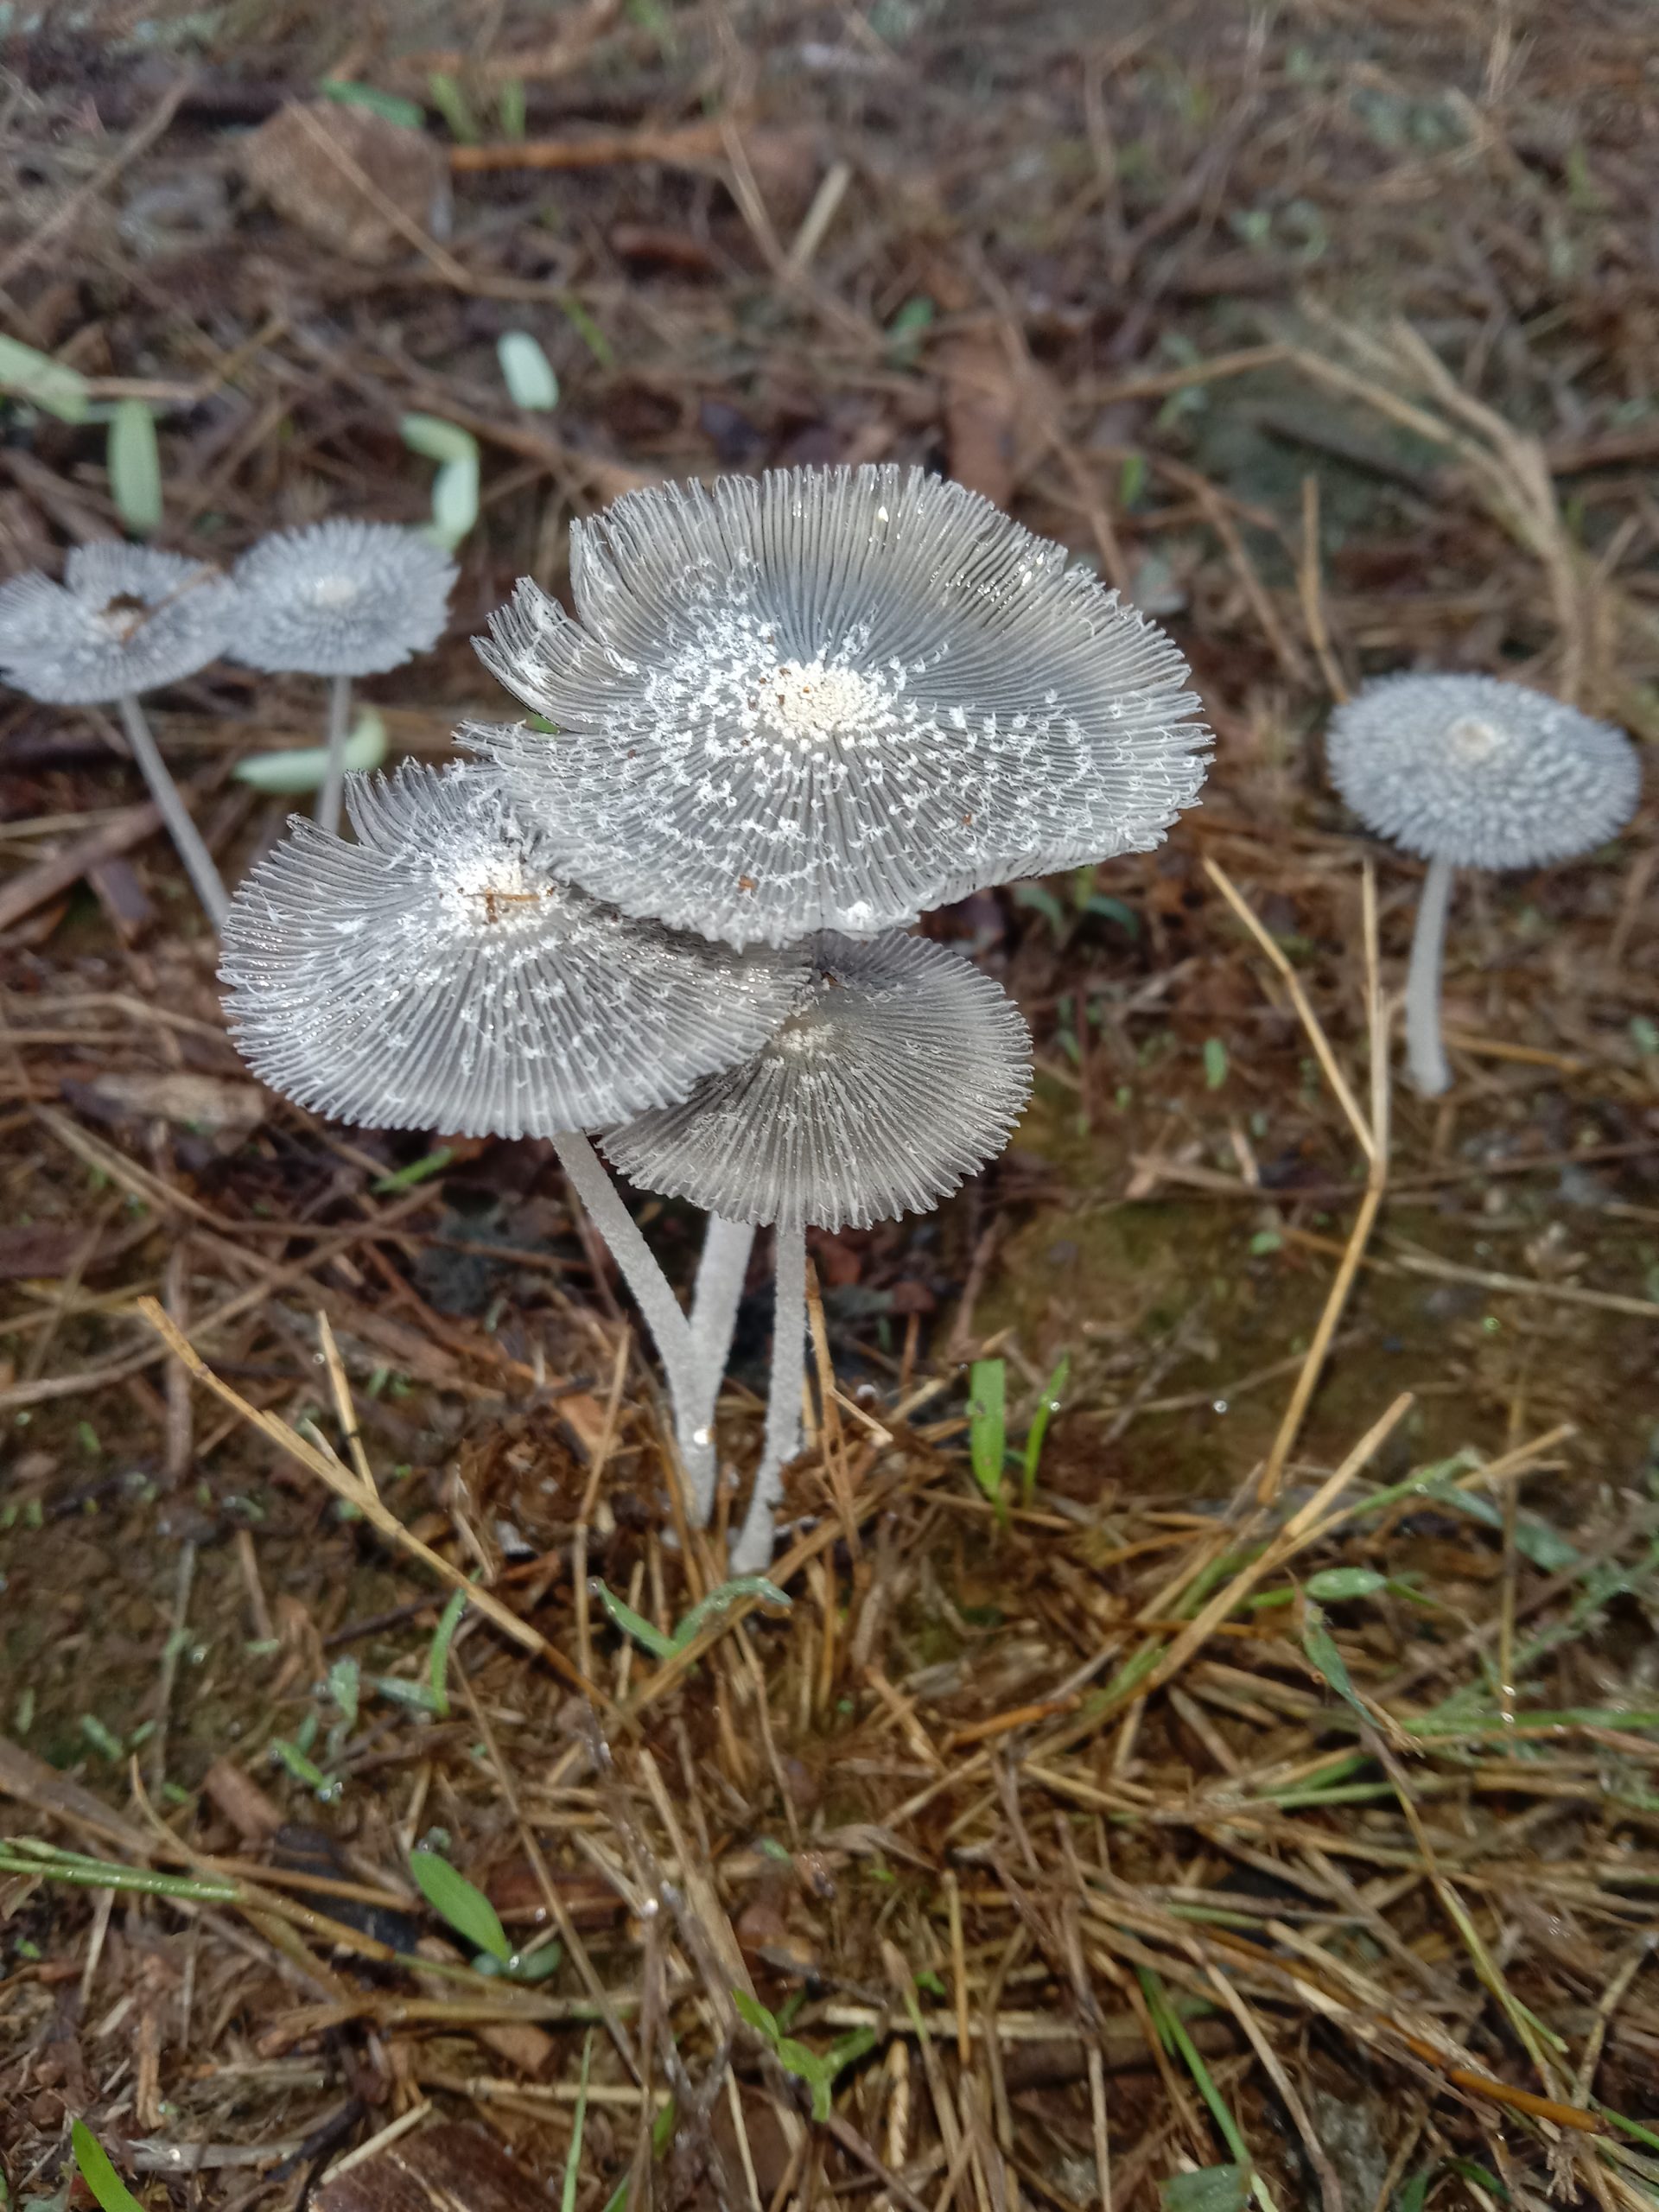 Mushroom plants